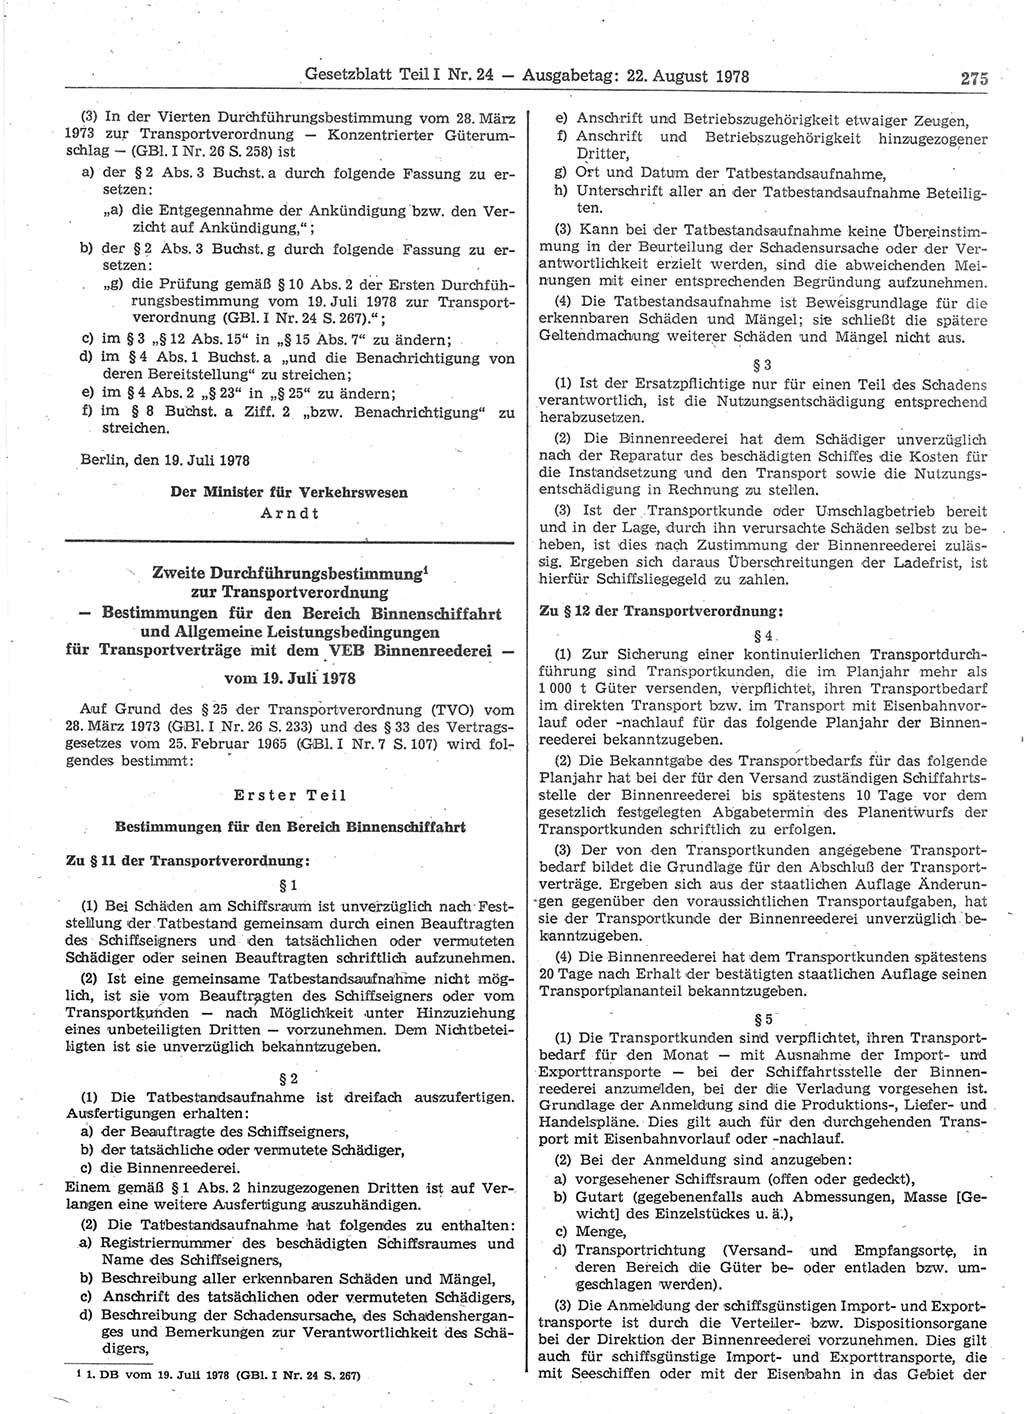 Gesetzblatt (GBl.) der Deutschen Demokratischen Republik (DDR) Teil Ⅰ 1978, Seite 275 (GBl. DDR Ⅰ 1978, S. 275)